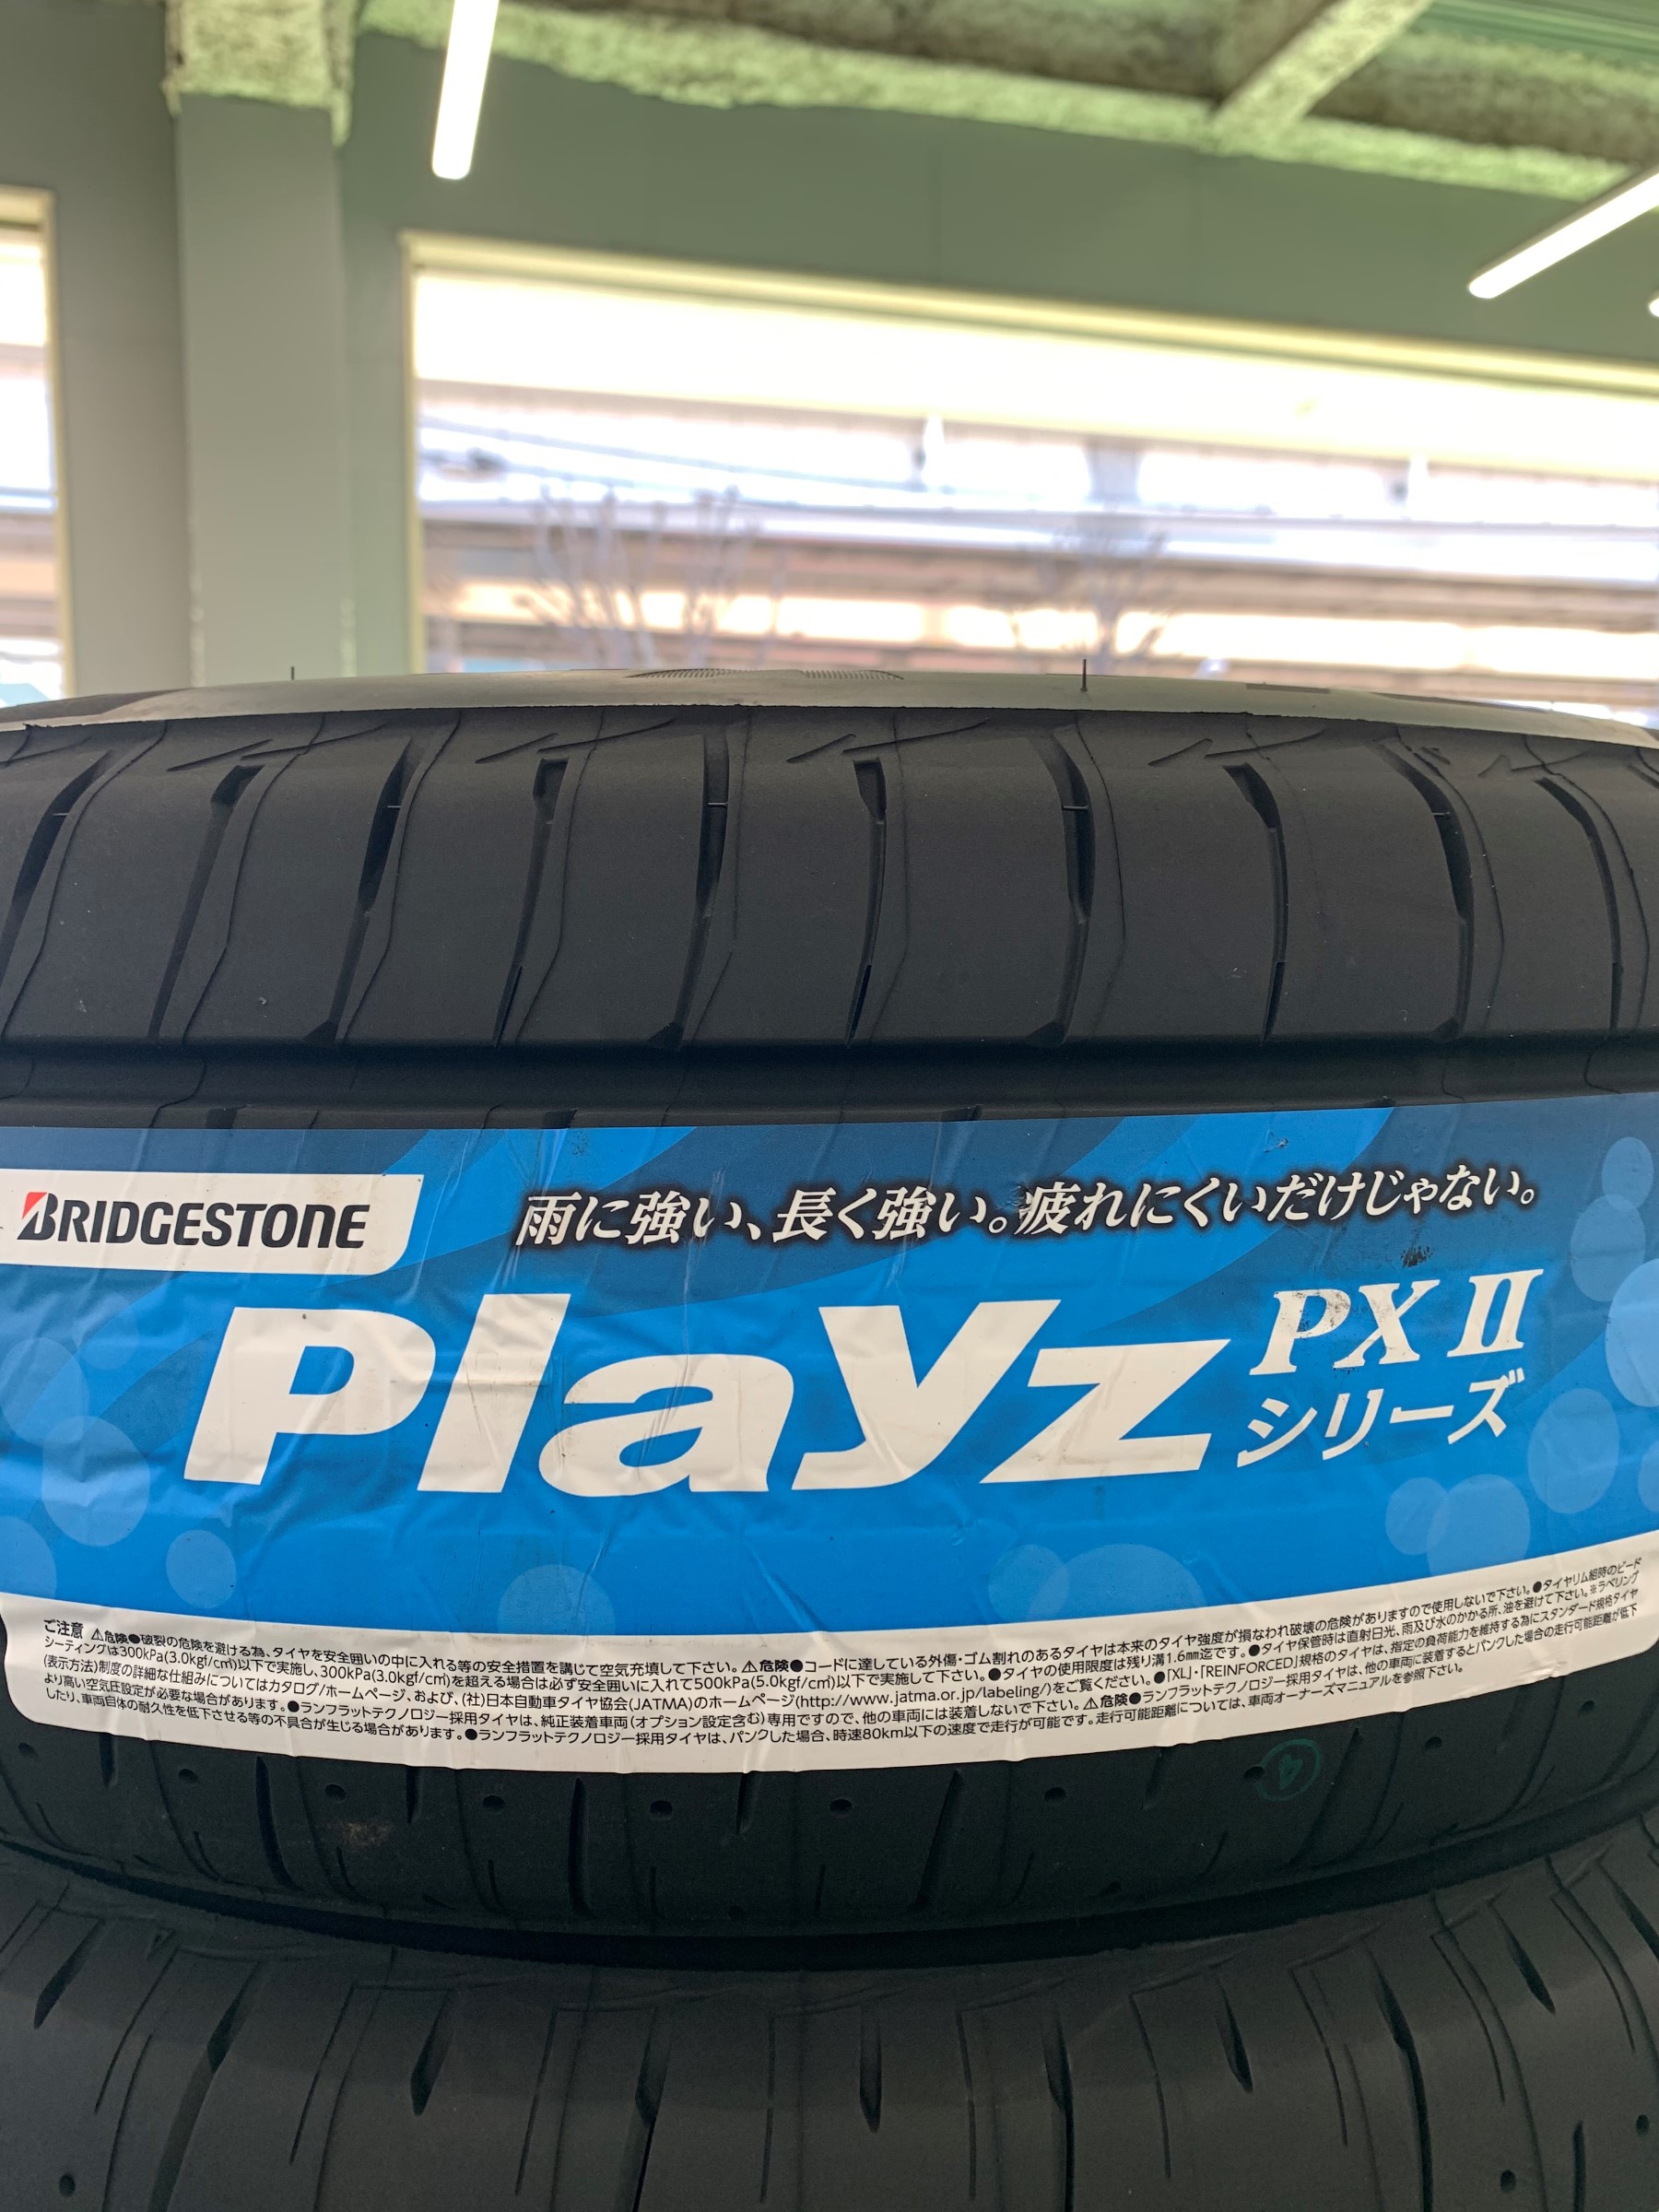 Playz トヨタ ヴォクシー(90系)用 205/55R17 95V XL ブリヂストン プレイズ PX-RV2 ハイブロック レグル 